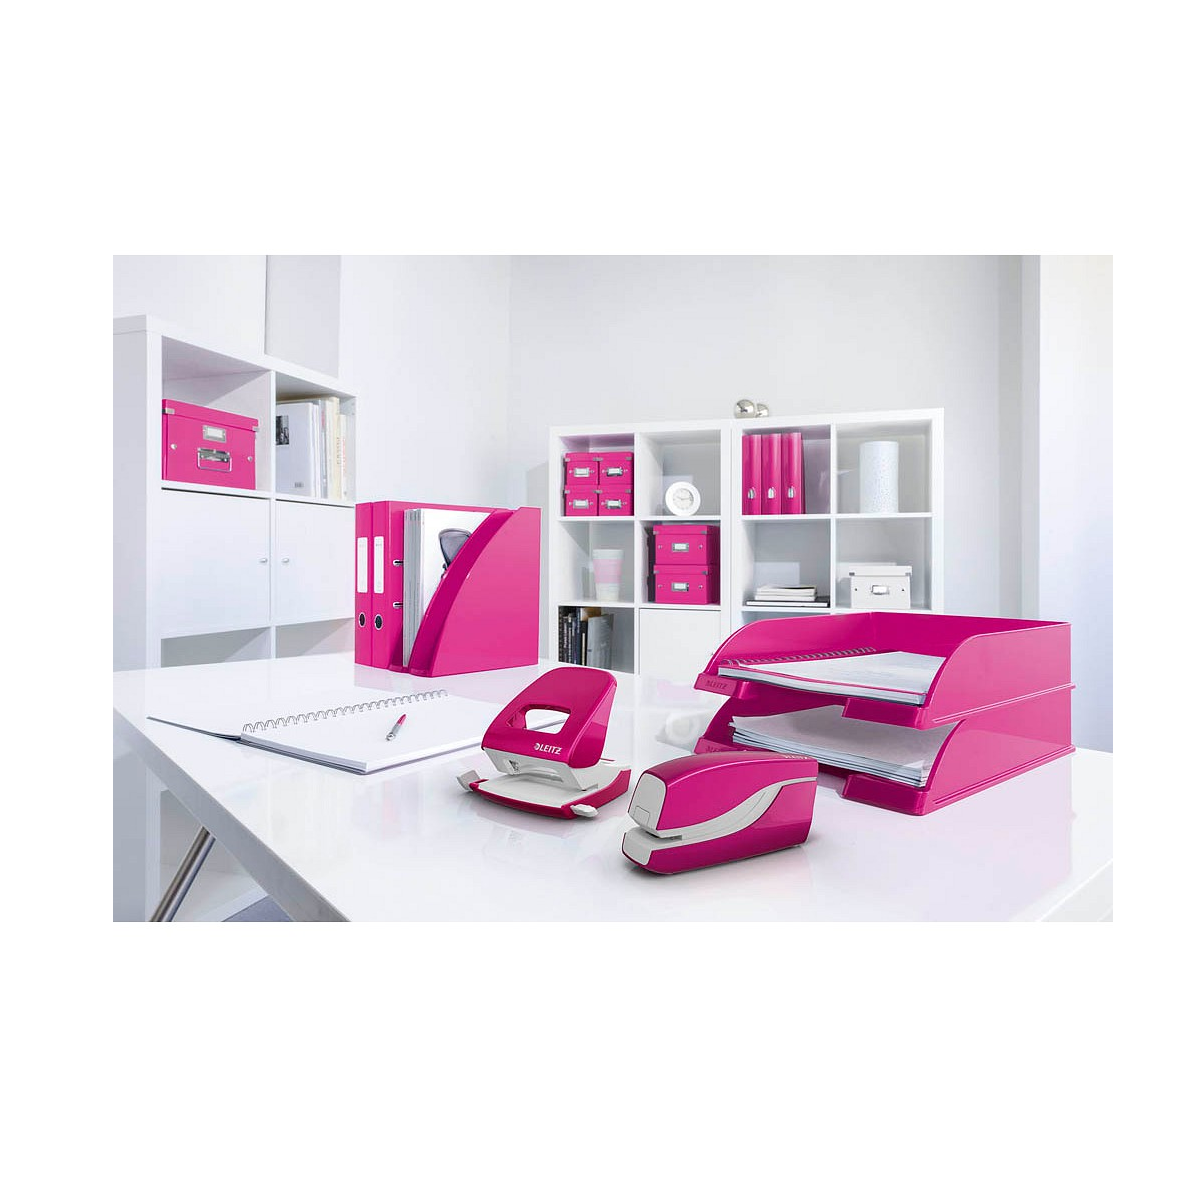 LEITZ Electric Stapler WOW Elektrohefter, Pink